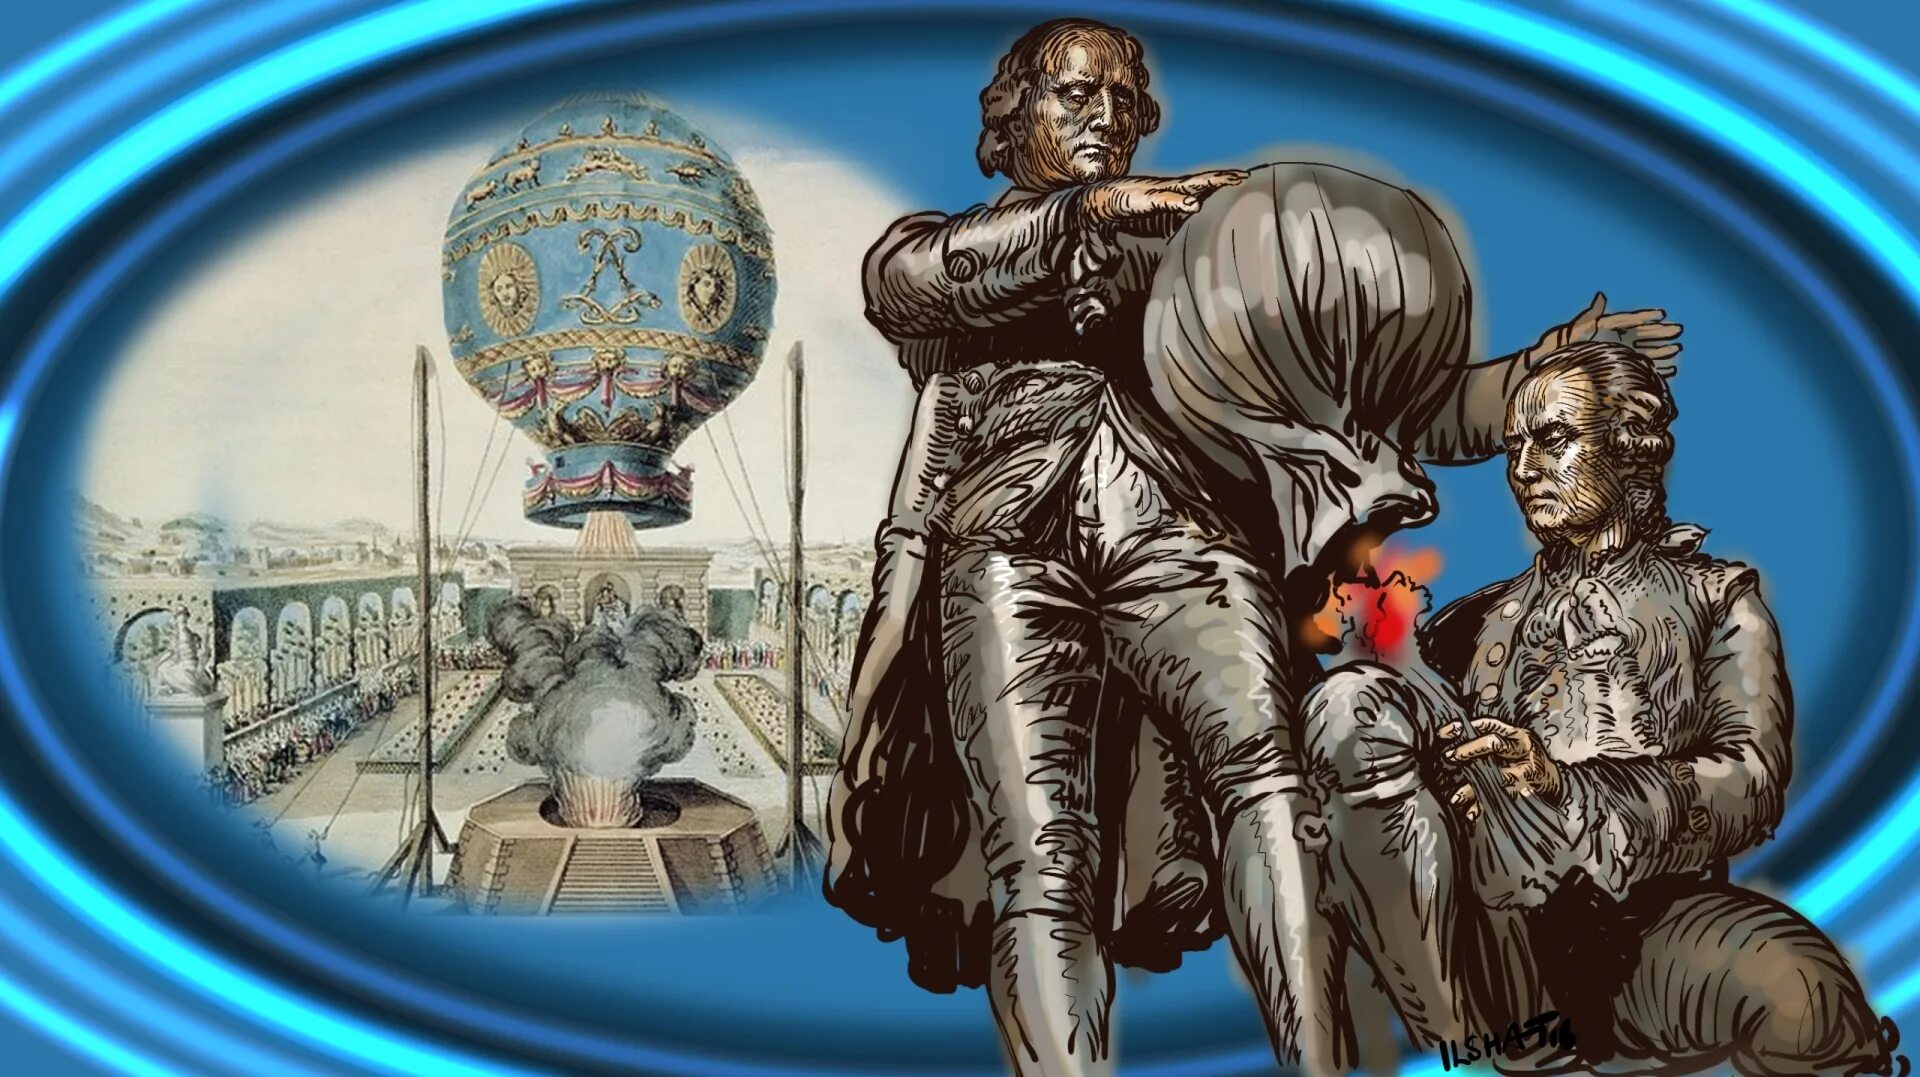 Первый шар монгольфье. Воздушный шар братьев Монгольфье. Воздушный шар 1782 году братья Монгольфье. 1783 Братья Монгольфье.